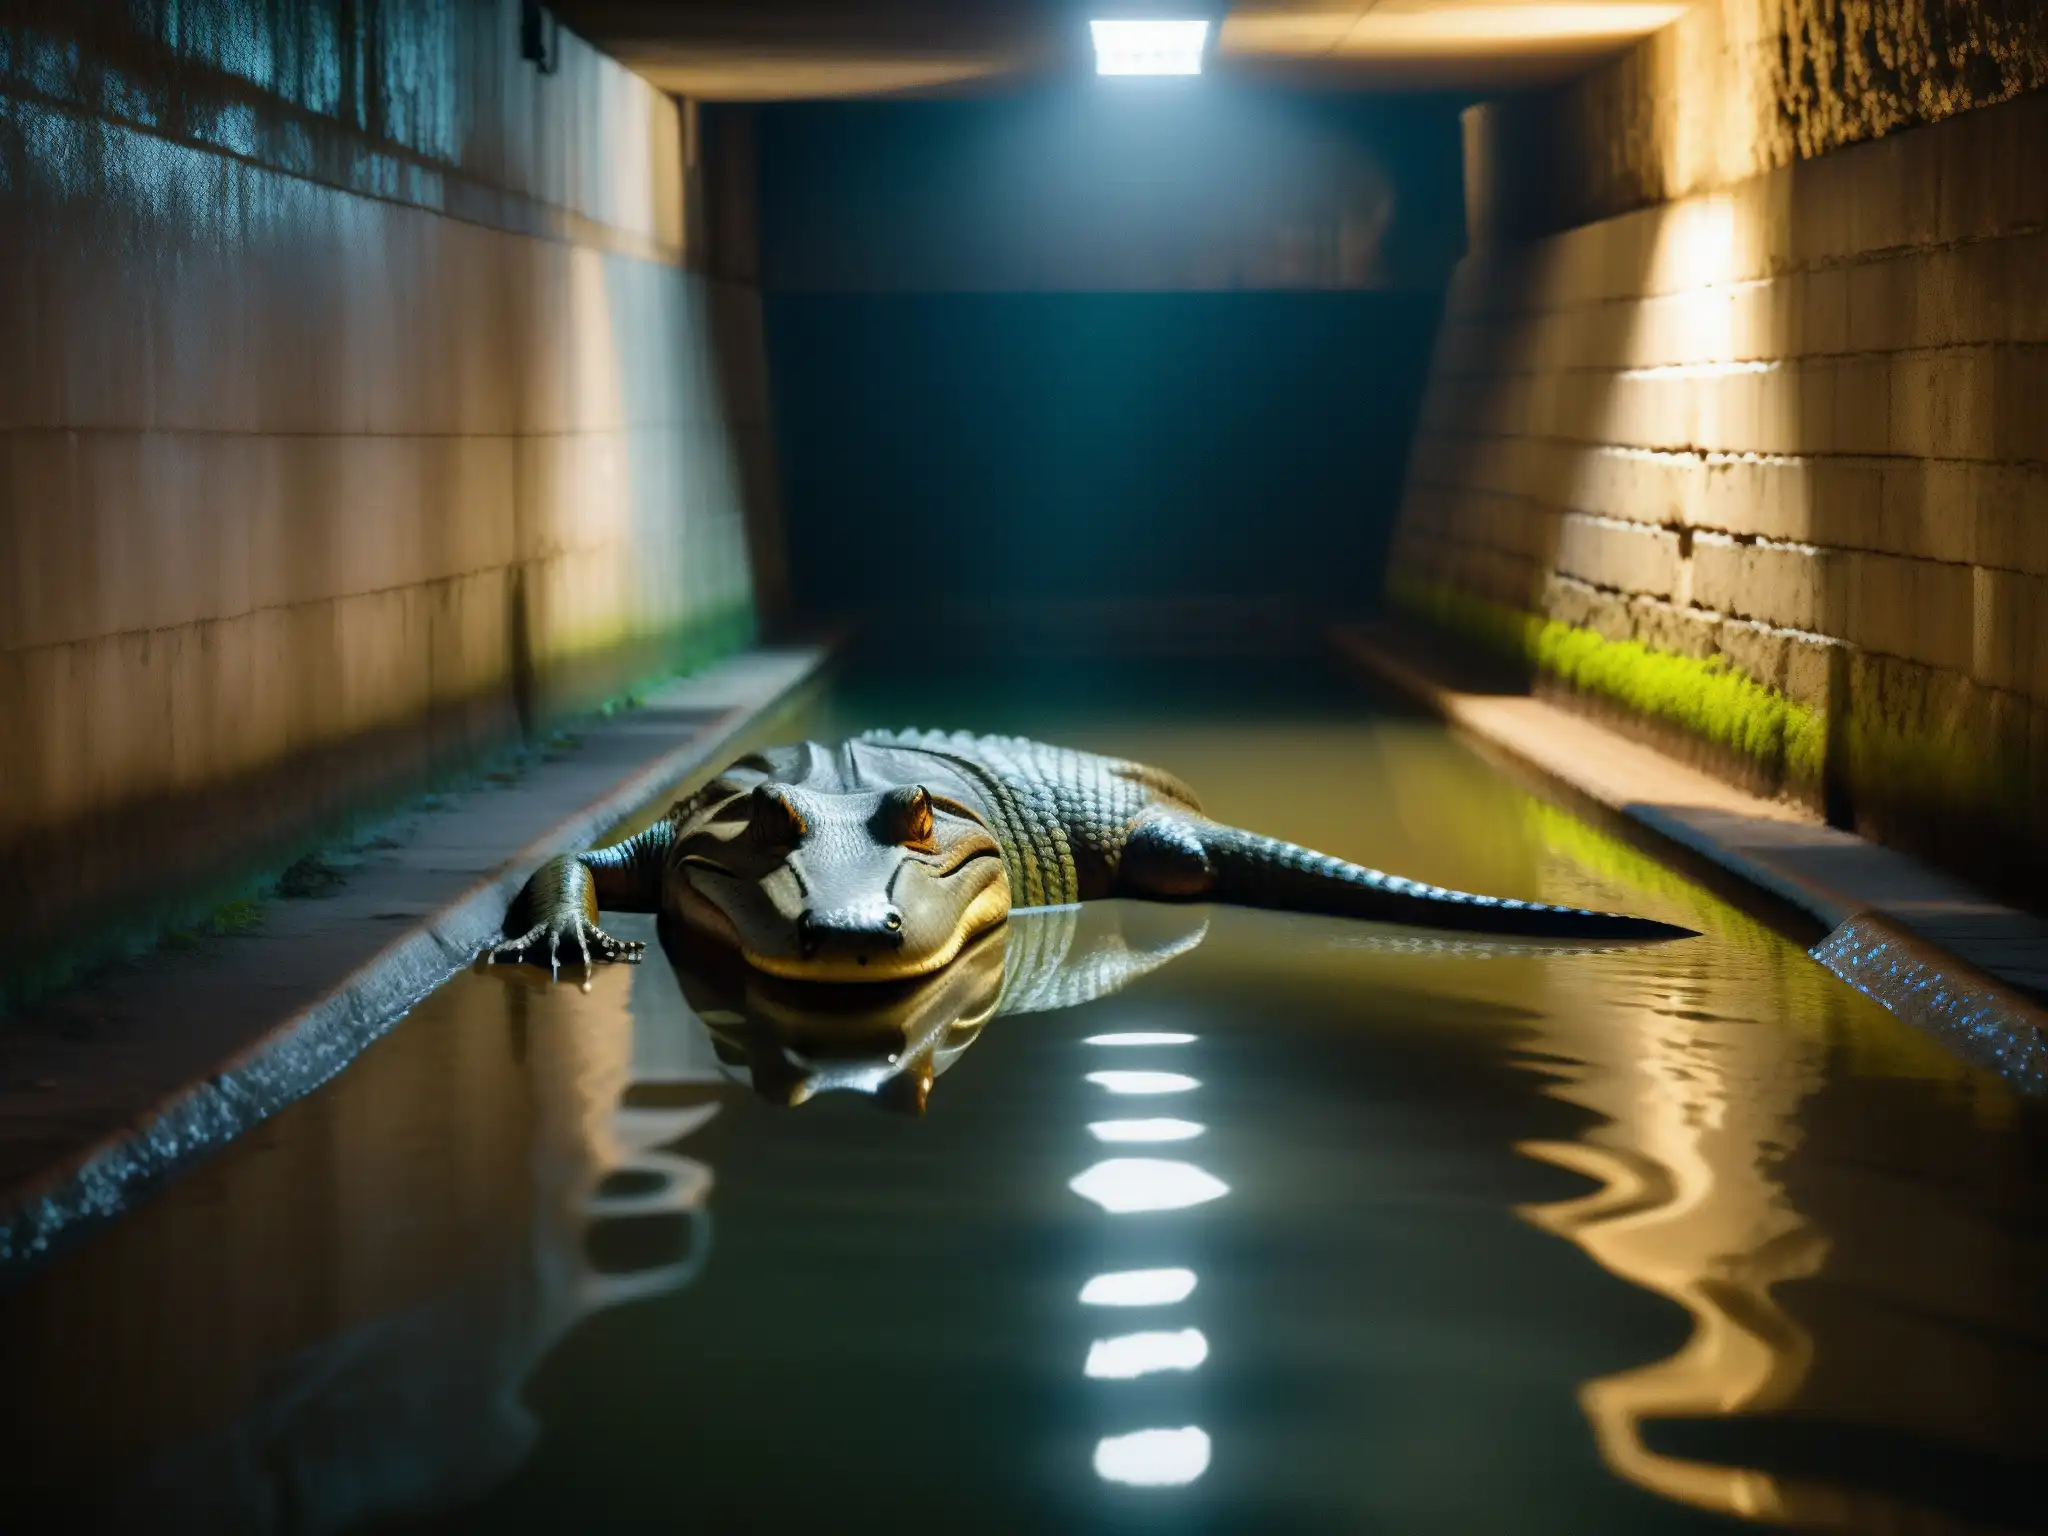 Imagen detallada del mito del Alligator Alcantarillado Nueva York, con una figura sombría que evoca la atmósfera misteriosa del submundo urbano